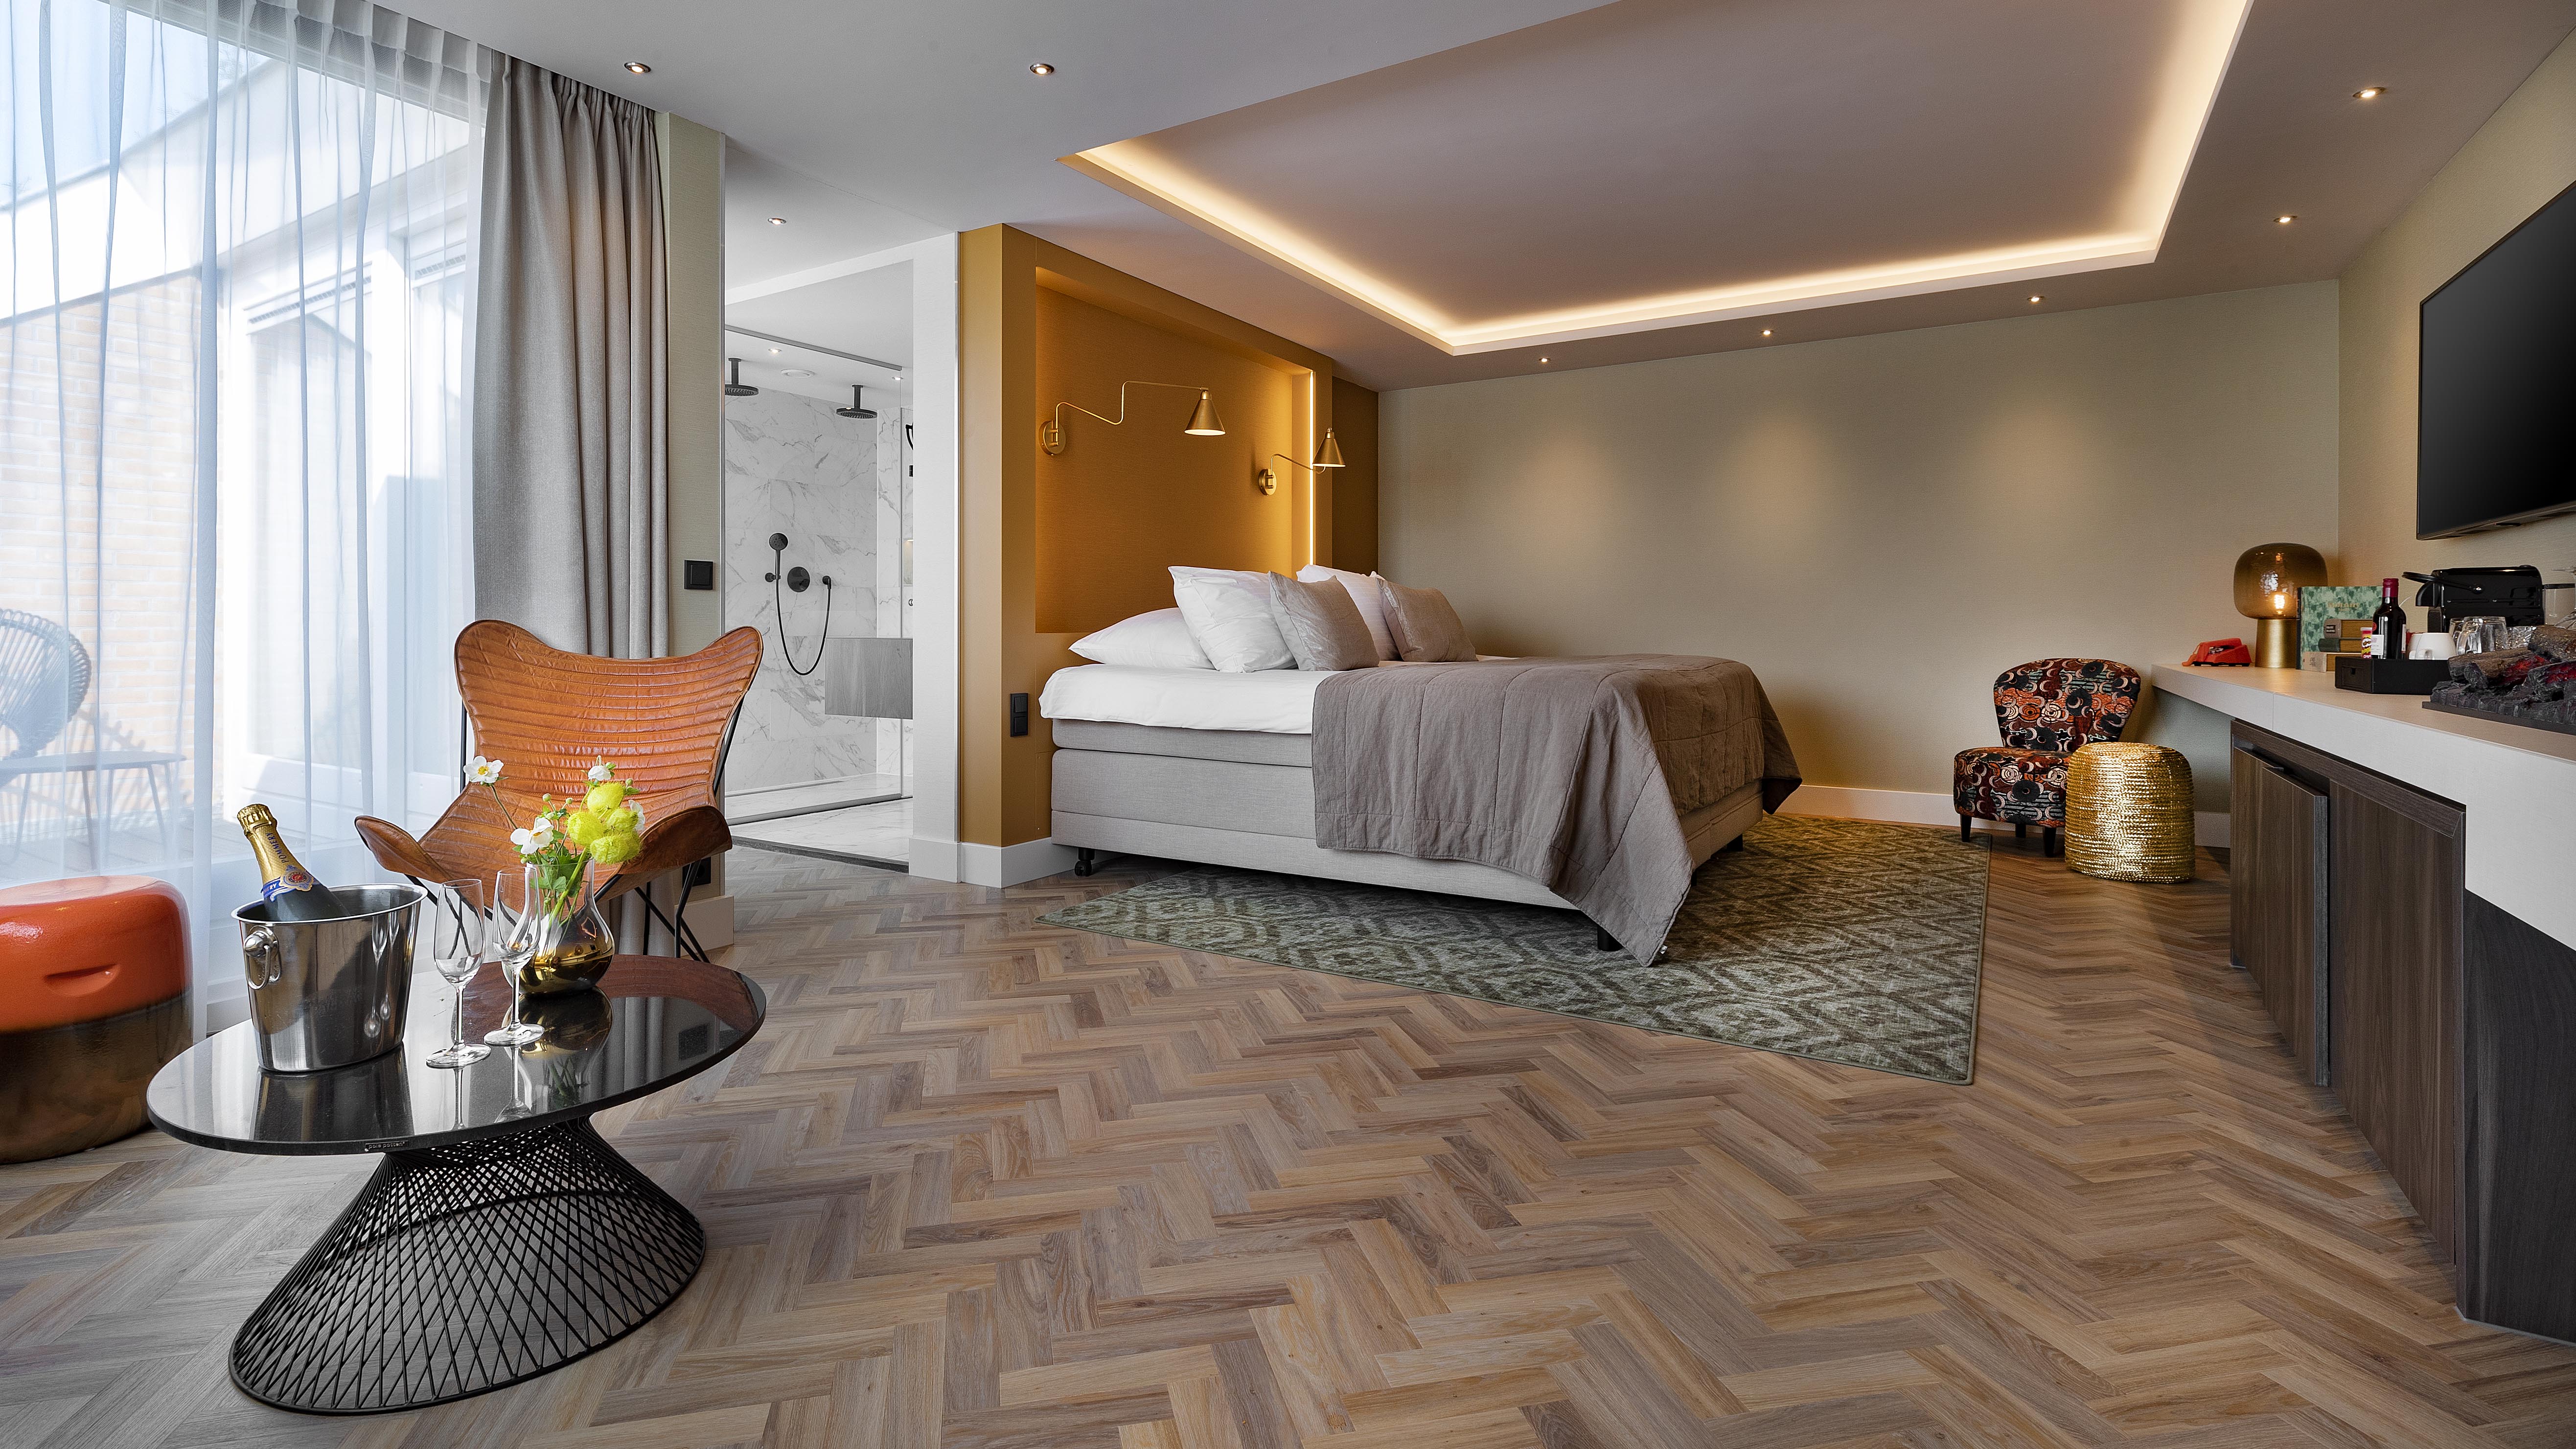 Hotel Emmeloord - Suite dreams arrangement